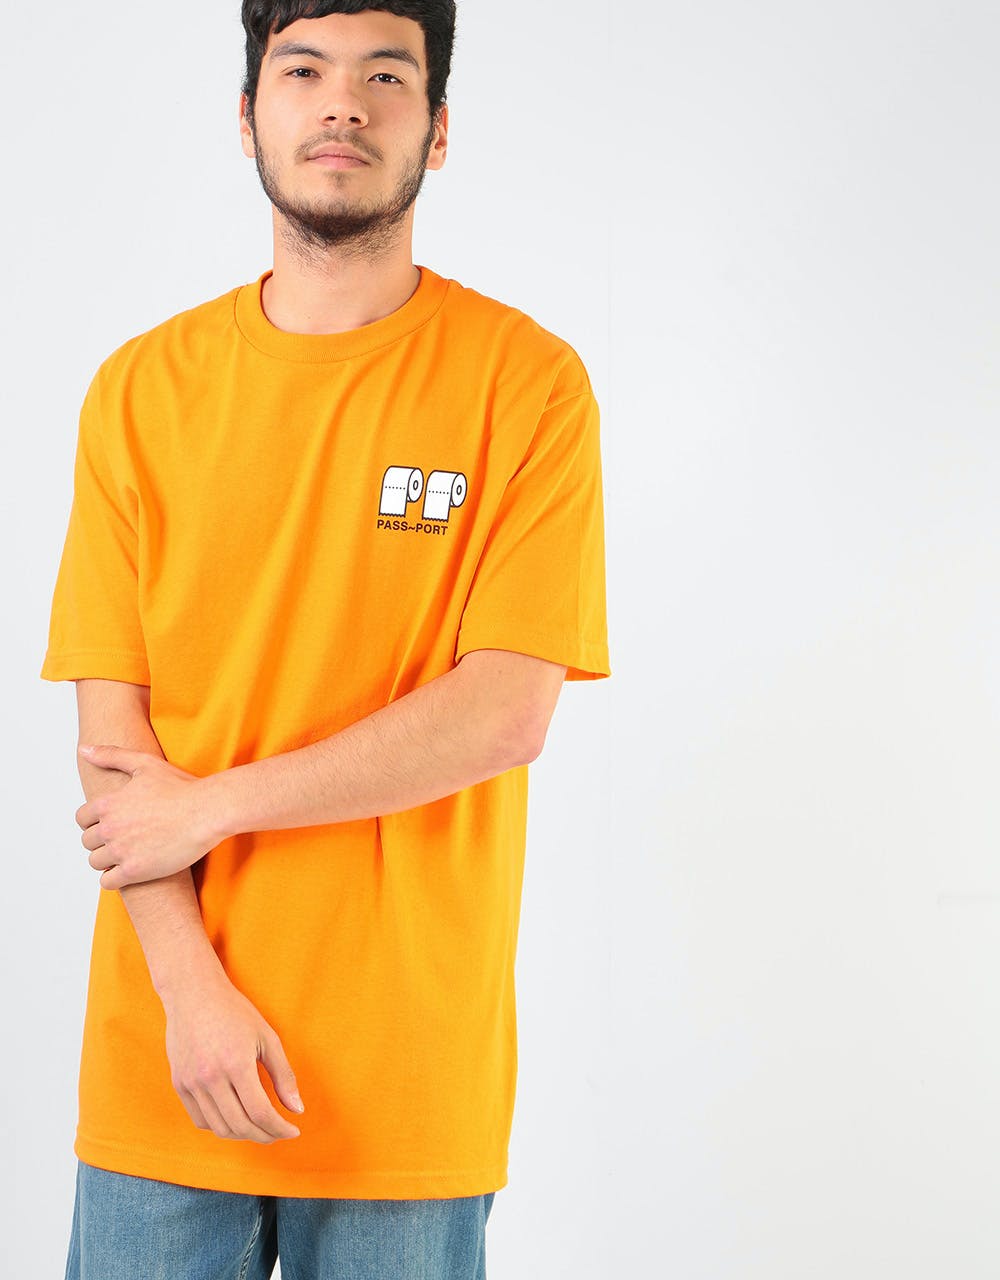 Pass Port Poo Poo T-Shirt - Orange